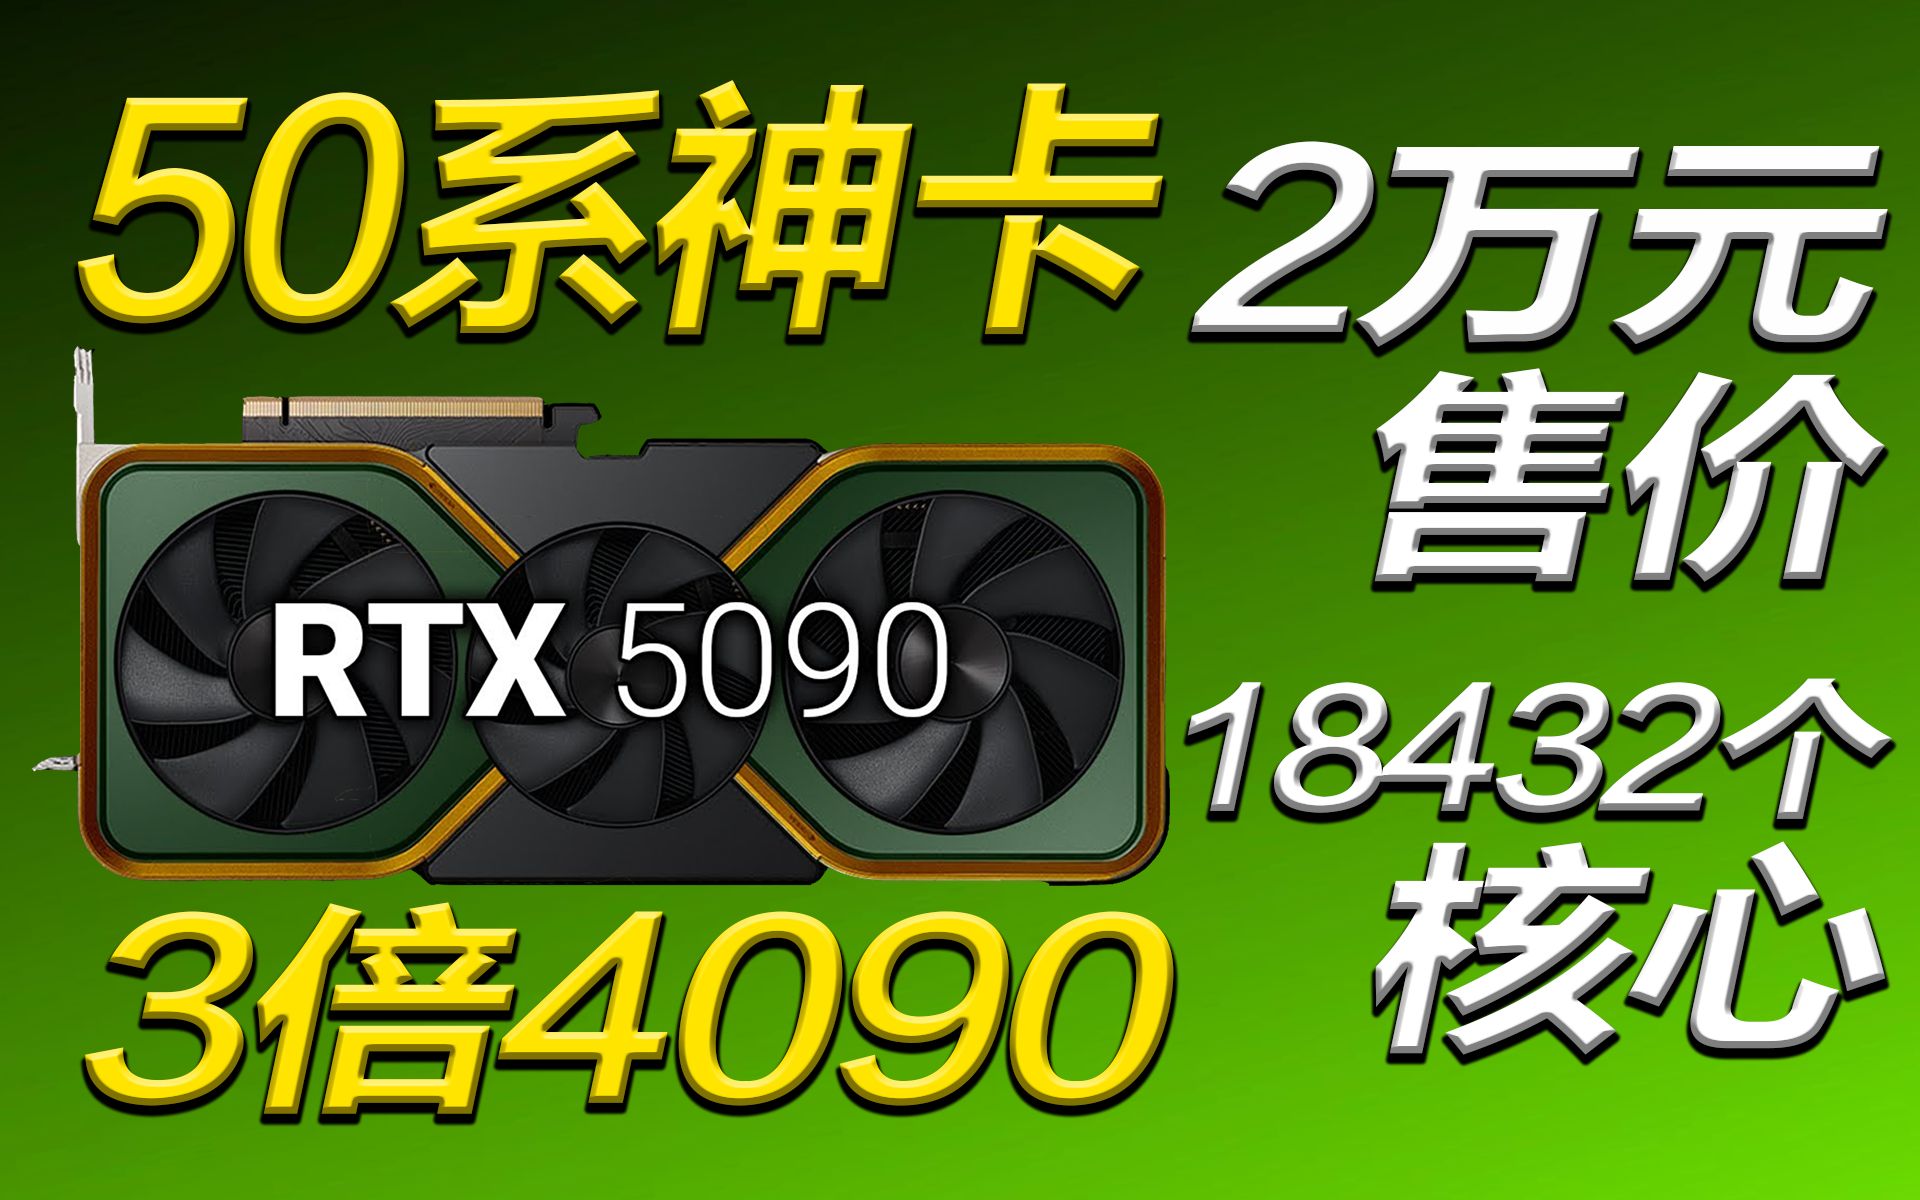 50系神卡RTX 5090来了！爆料称3倍RTX 4090性能，售价会超2万元吗？【宅同学】